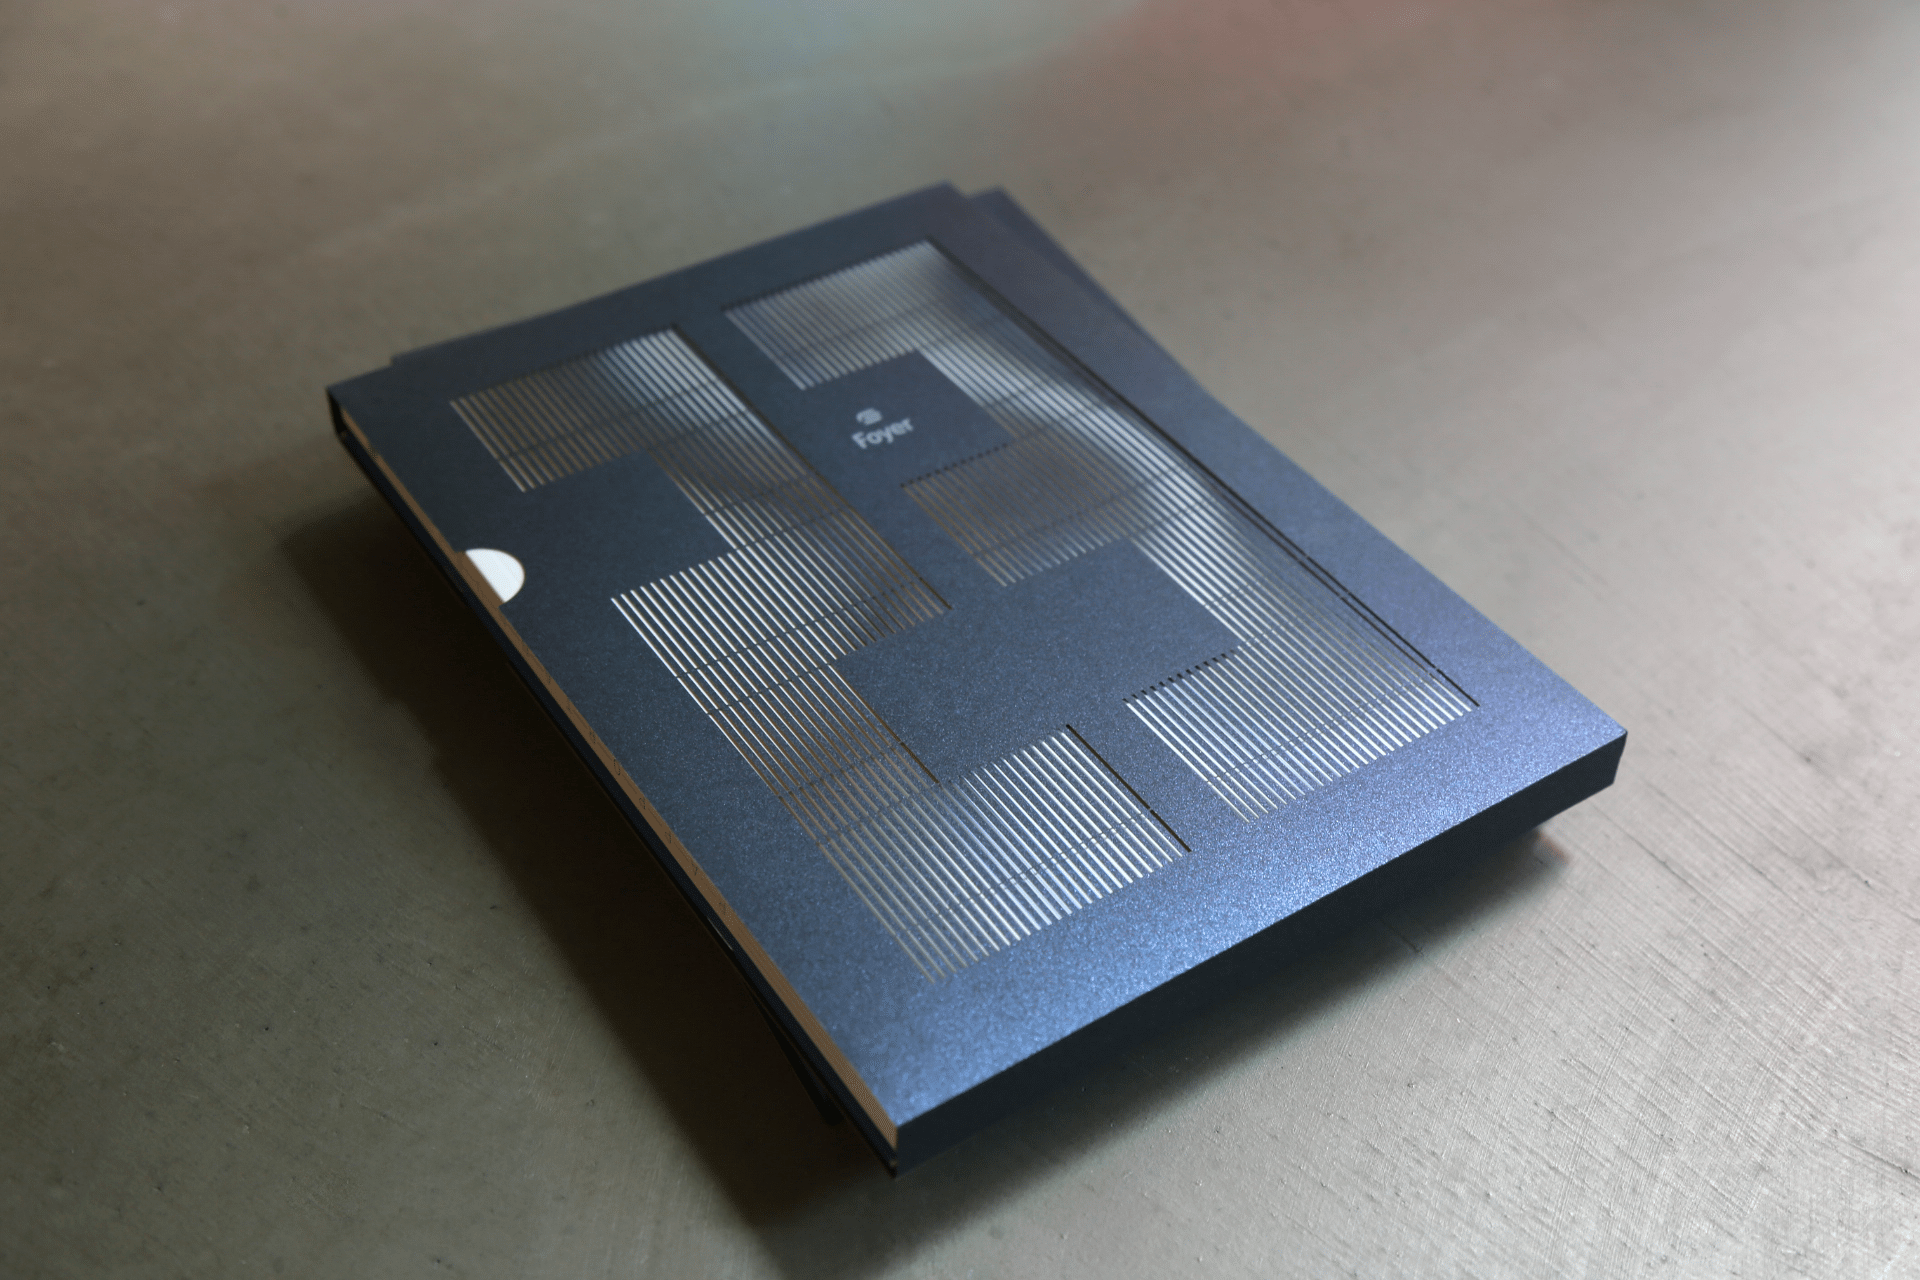 Couverture du rapport annuel foyer, livre bleu avec couverture découpée pour former le nombre 23